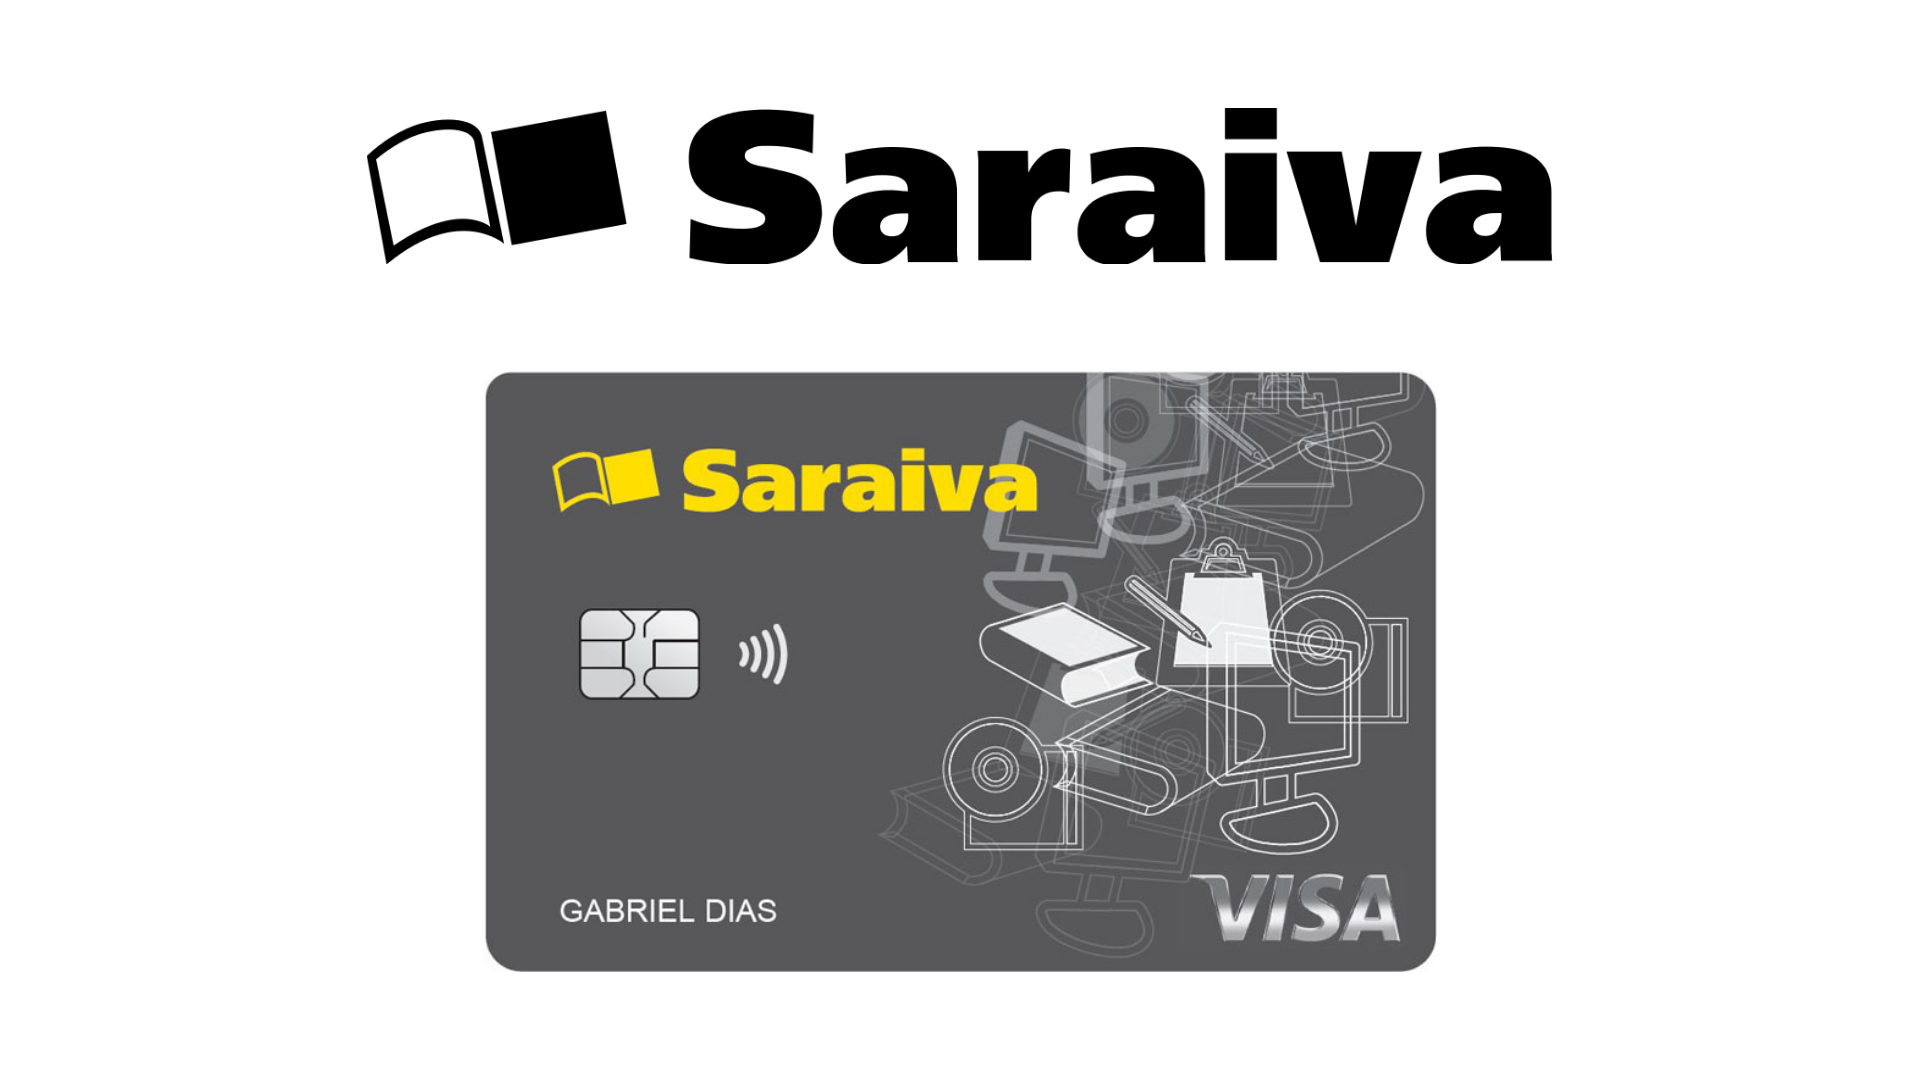 Cartão da livraria Saraiva tem isenção de anuidade e também oferece cobertura internacional. Fonte: Saraiva.